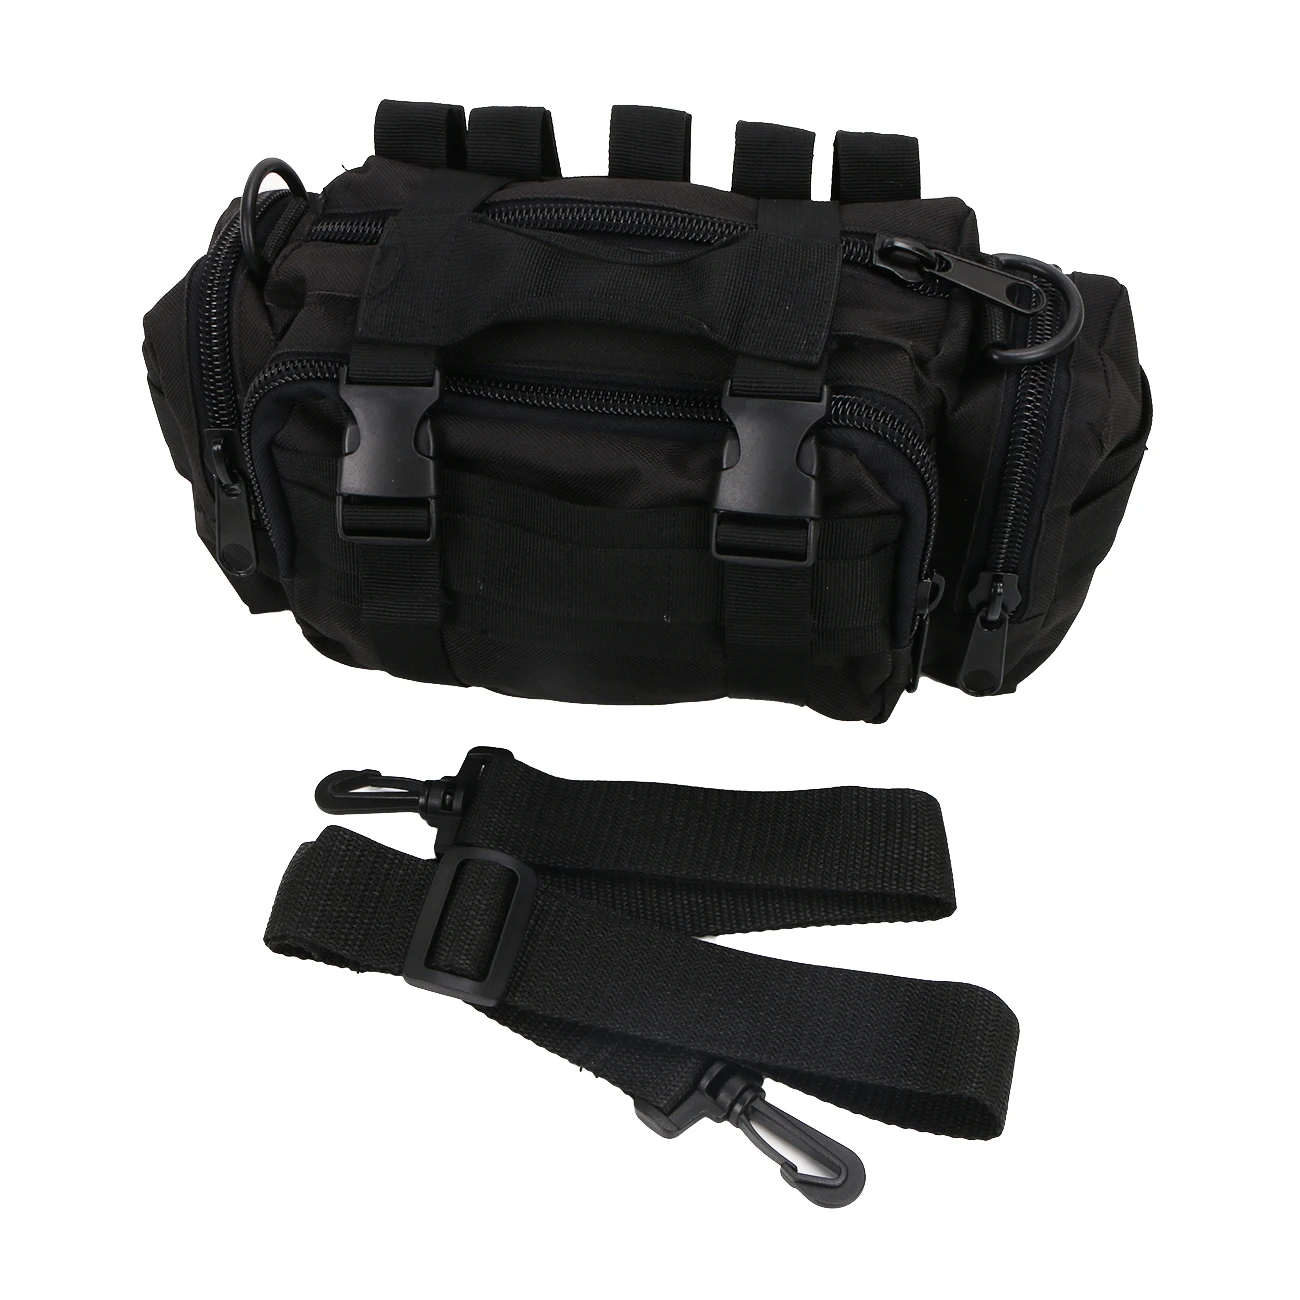 Крышка багажника автомобиля мульти карманы сумка для хранения и набор инструментов грузовая сумка седельная сумка для Jeep Wrangler JK Unlimited Rubicon Sahara# CE050